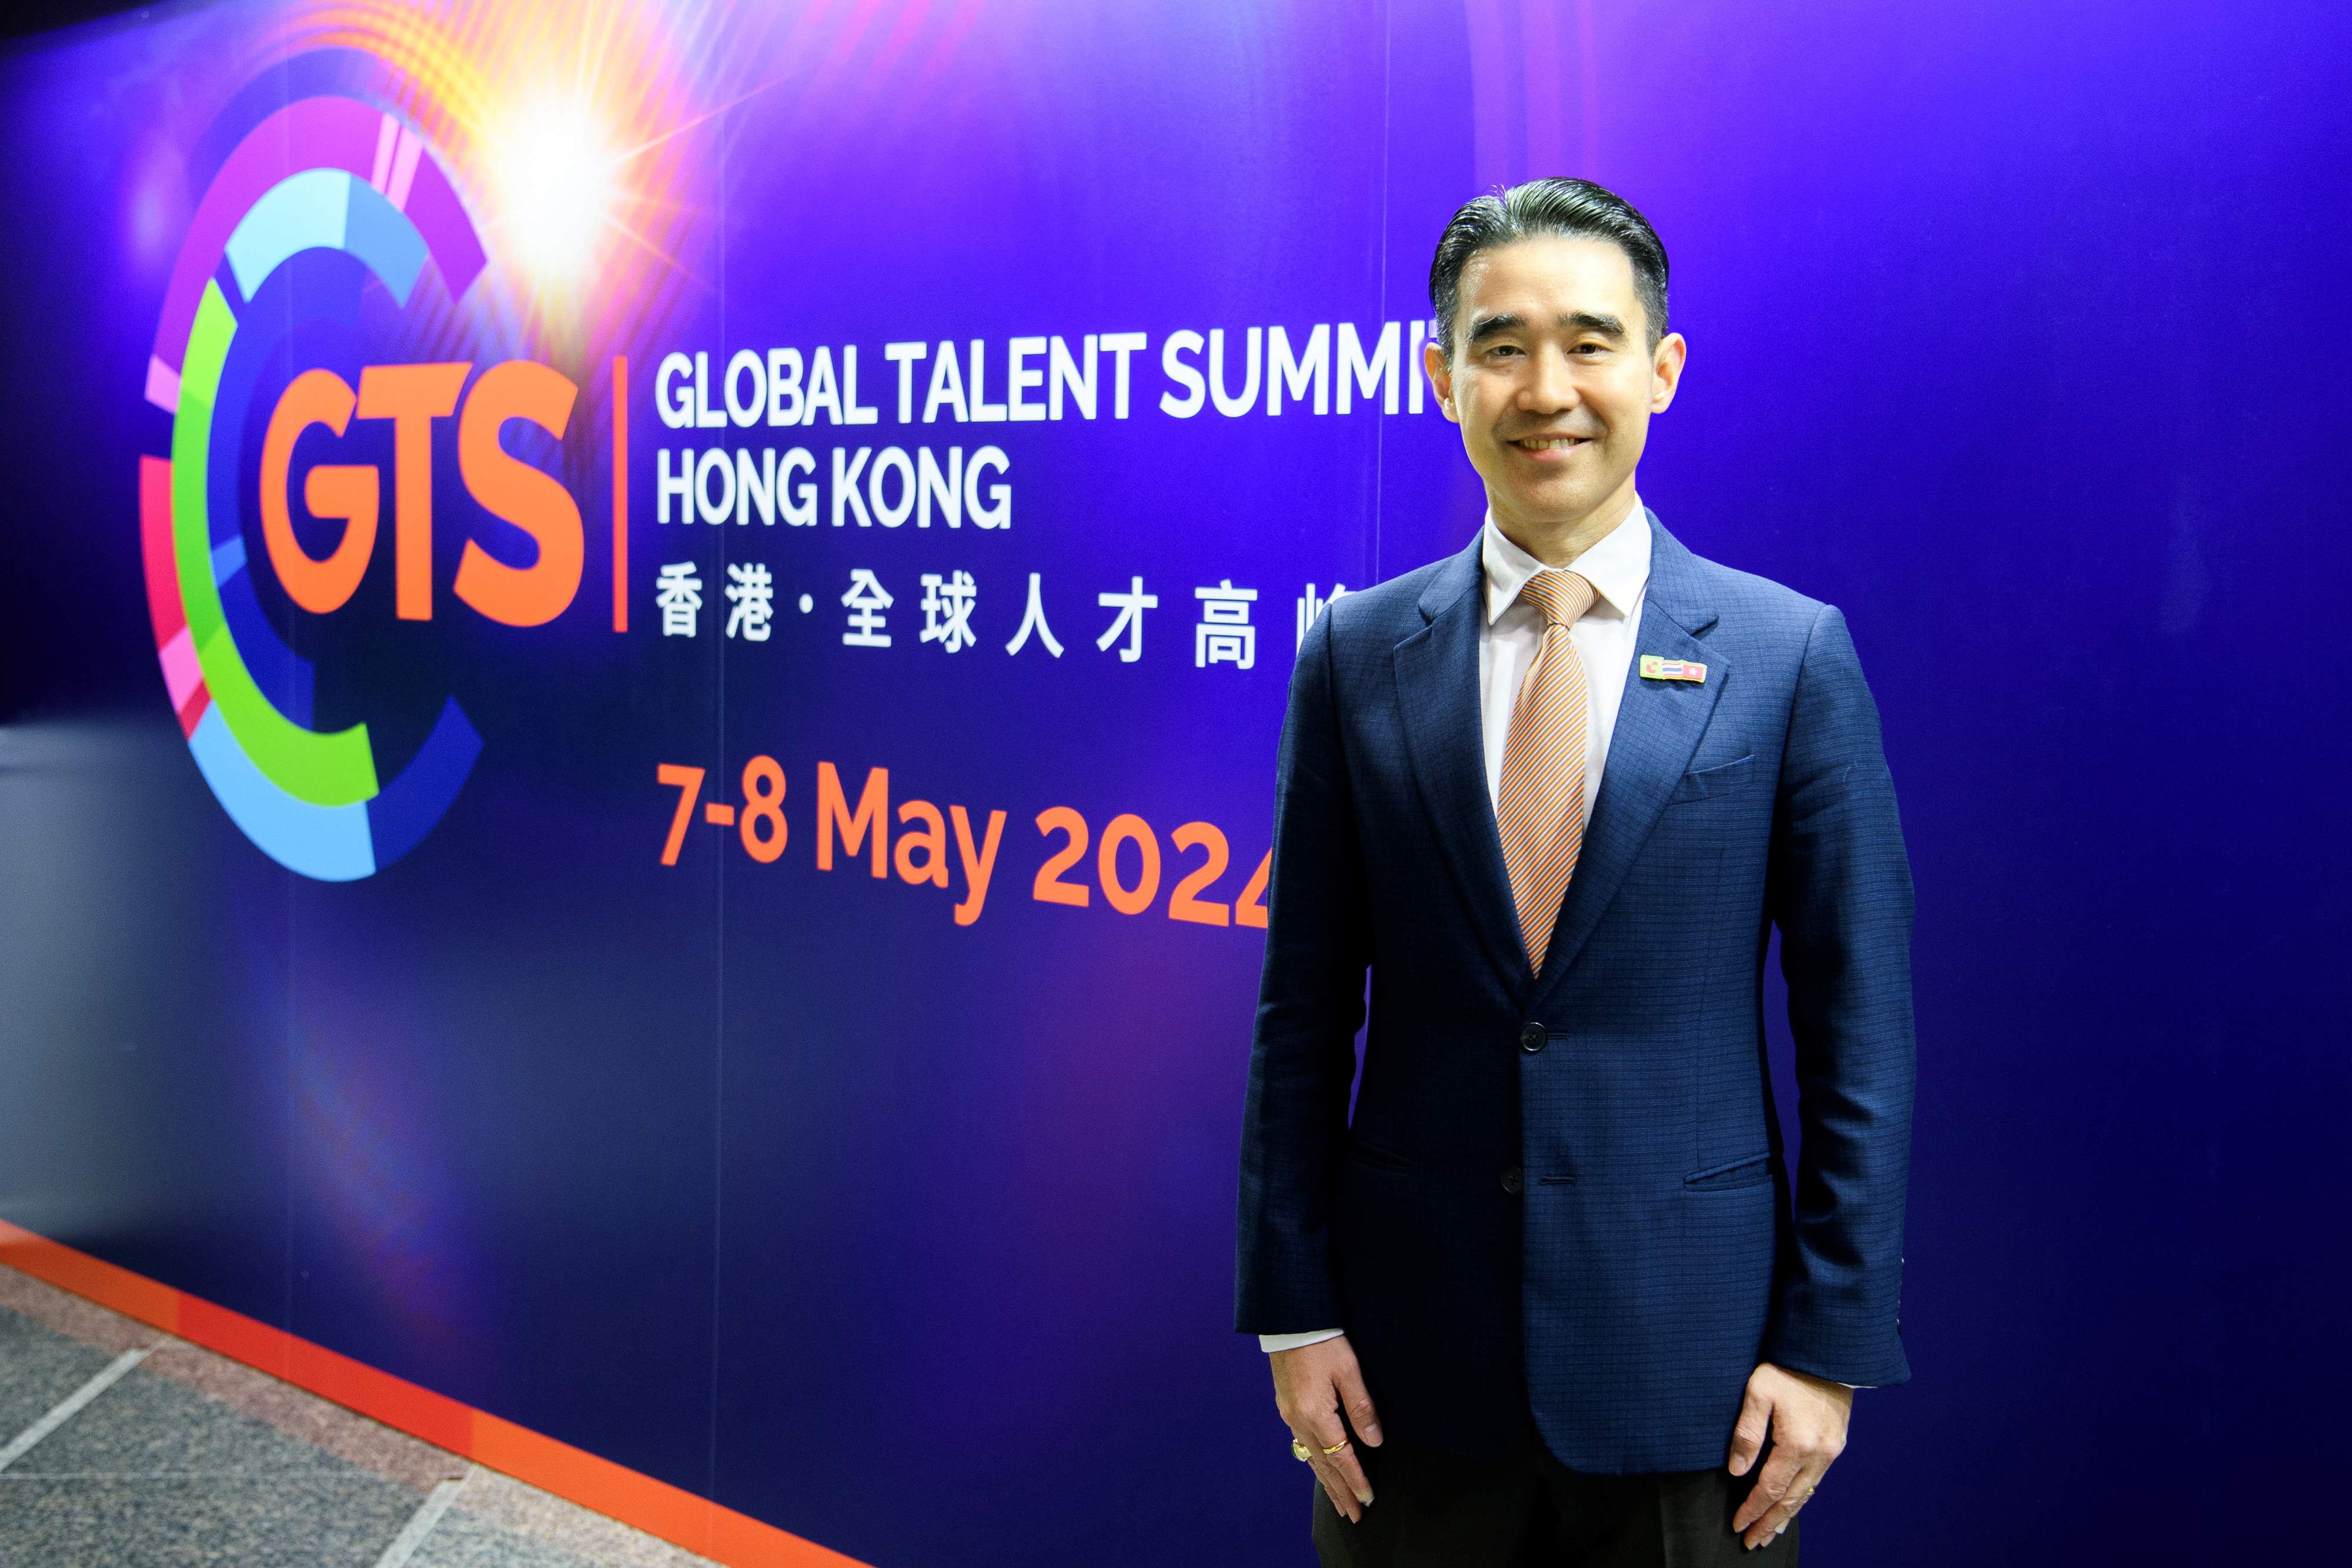 'อัศวิน' ประธานฯ Big C ร่วมเสวนาในงานประชุมบุคลากรระดับโลก Global Talent Summit ที่ฮ่องกง